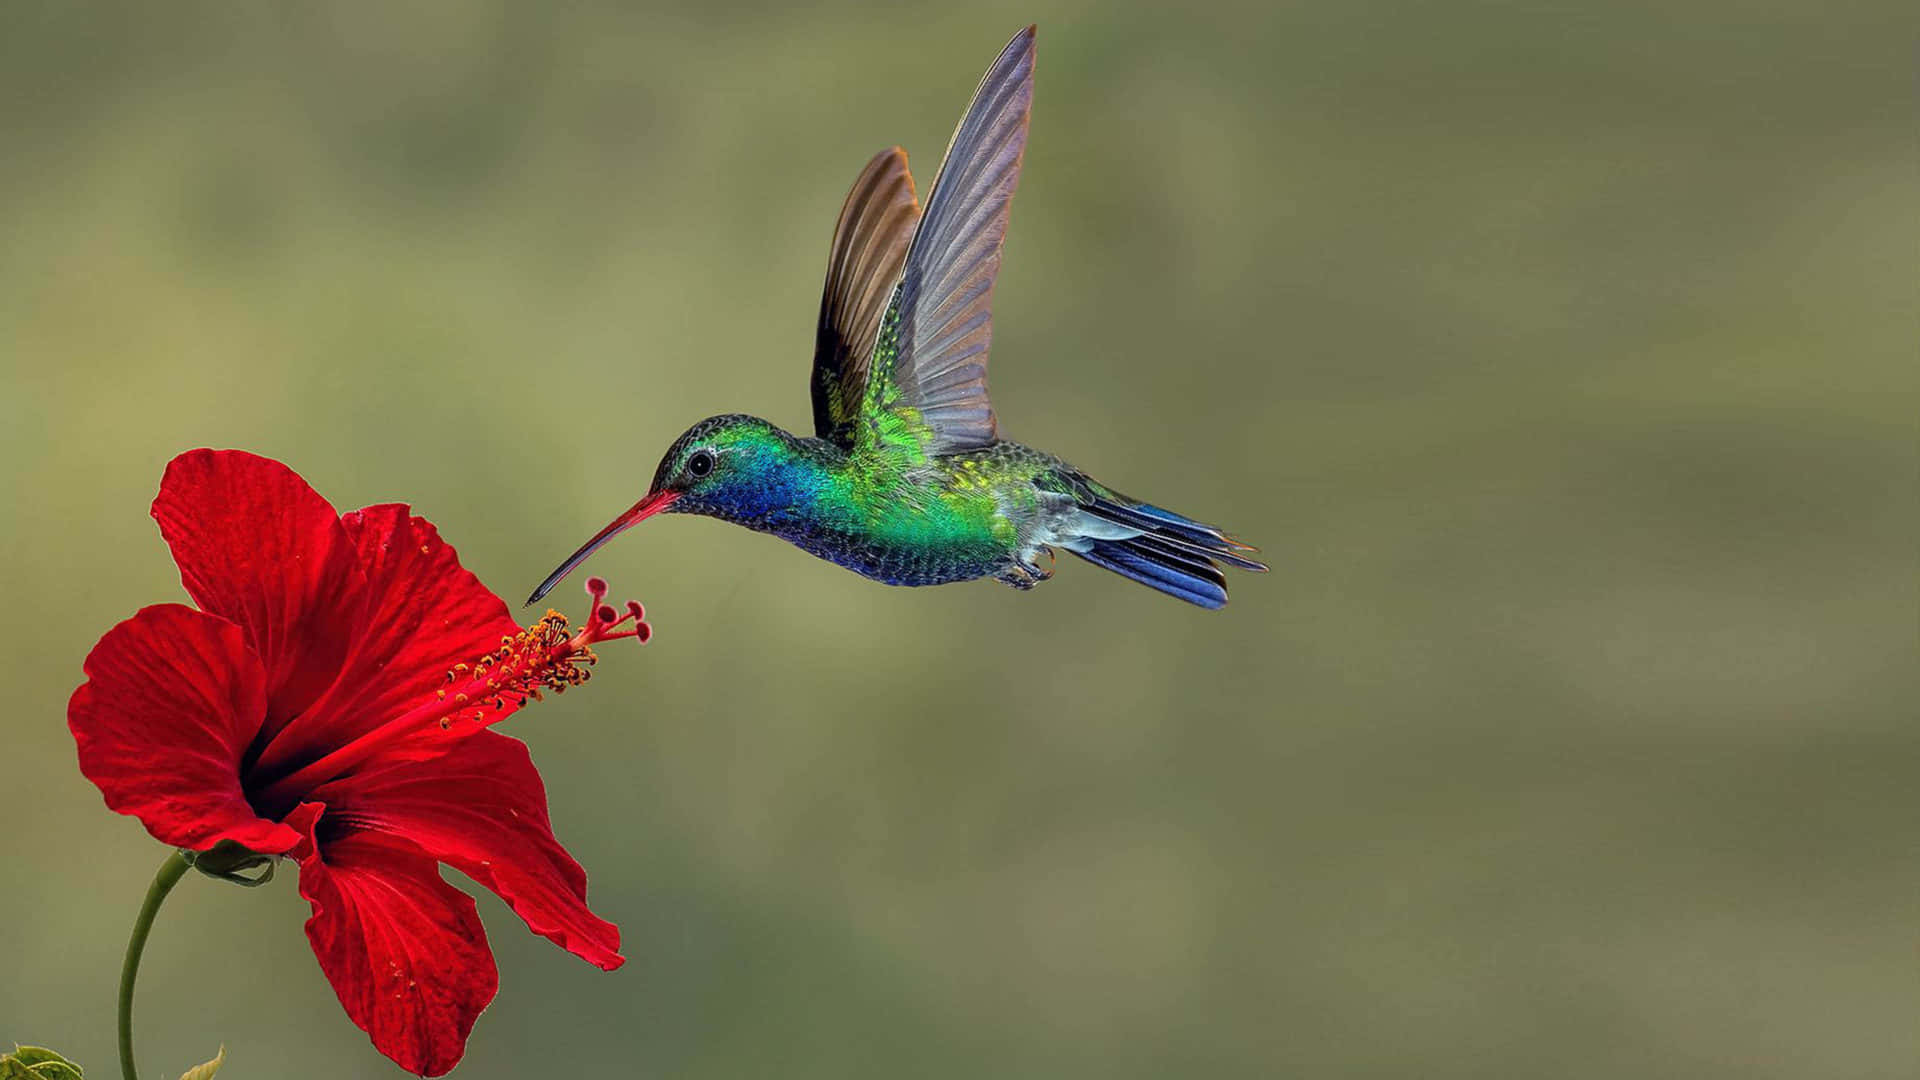 Samlarnektar Från En Vacker Blomma, Glädjer Denna Lilla Kolibri Oss Alla Med Sina Levande Färger.